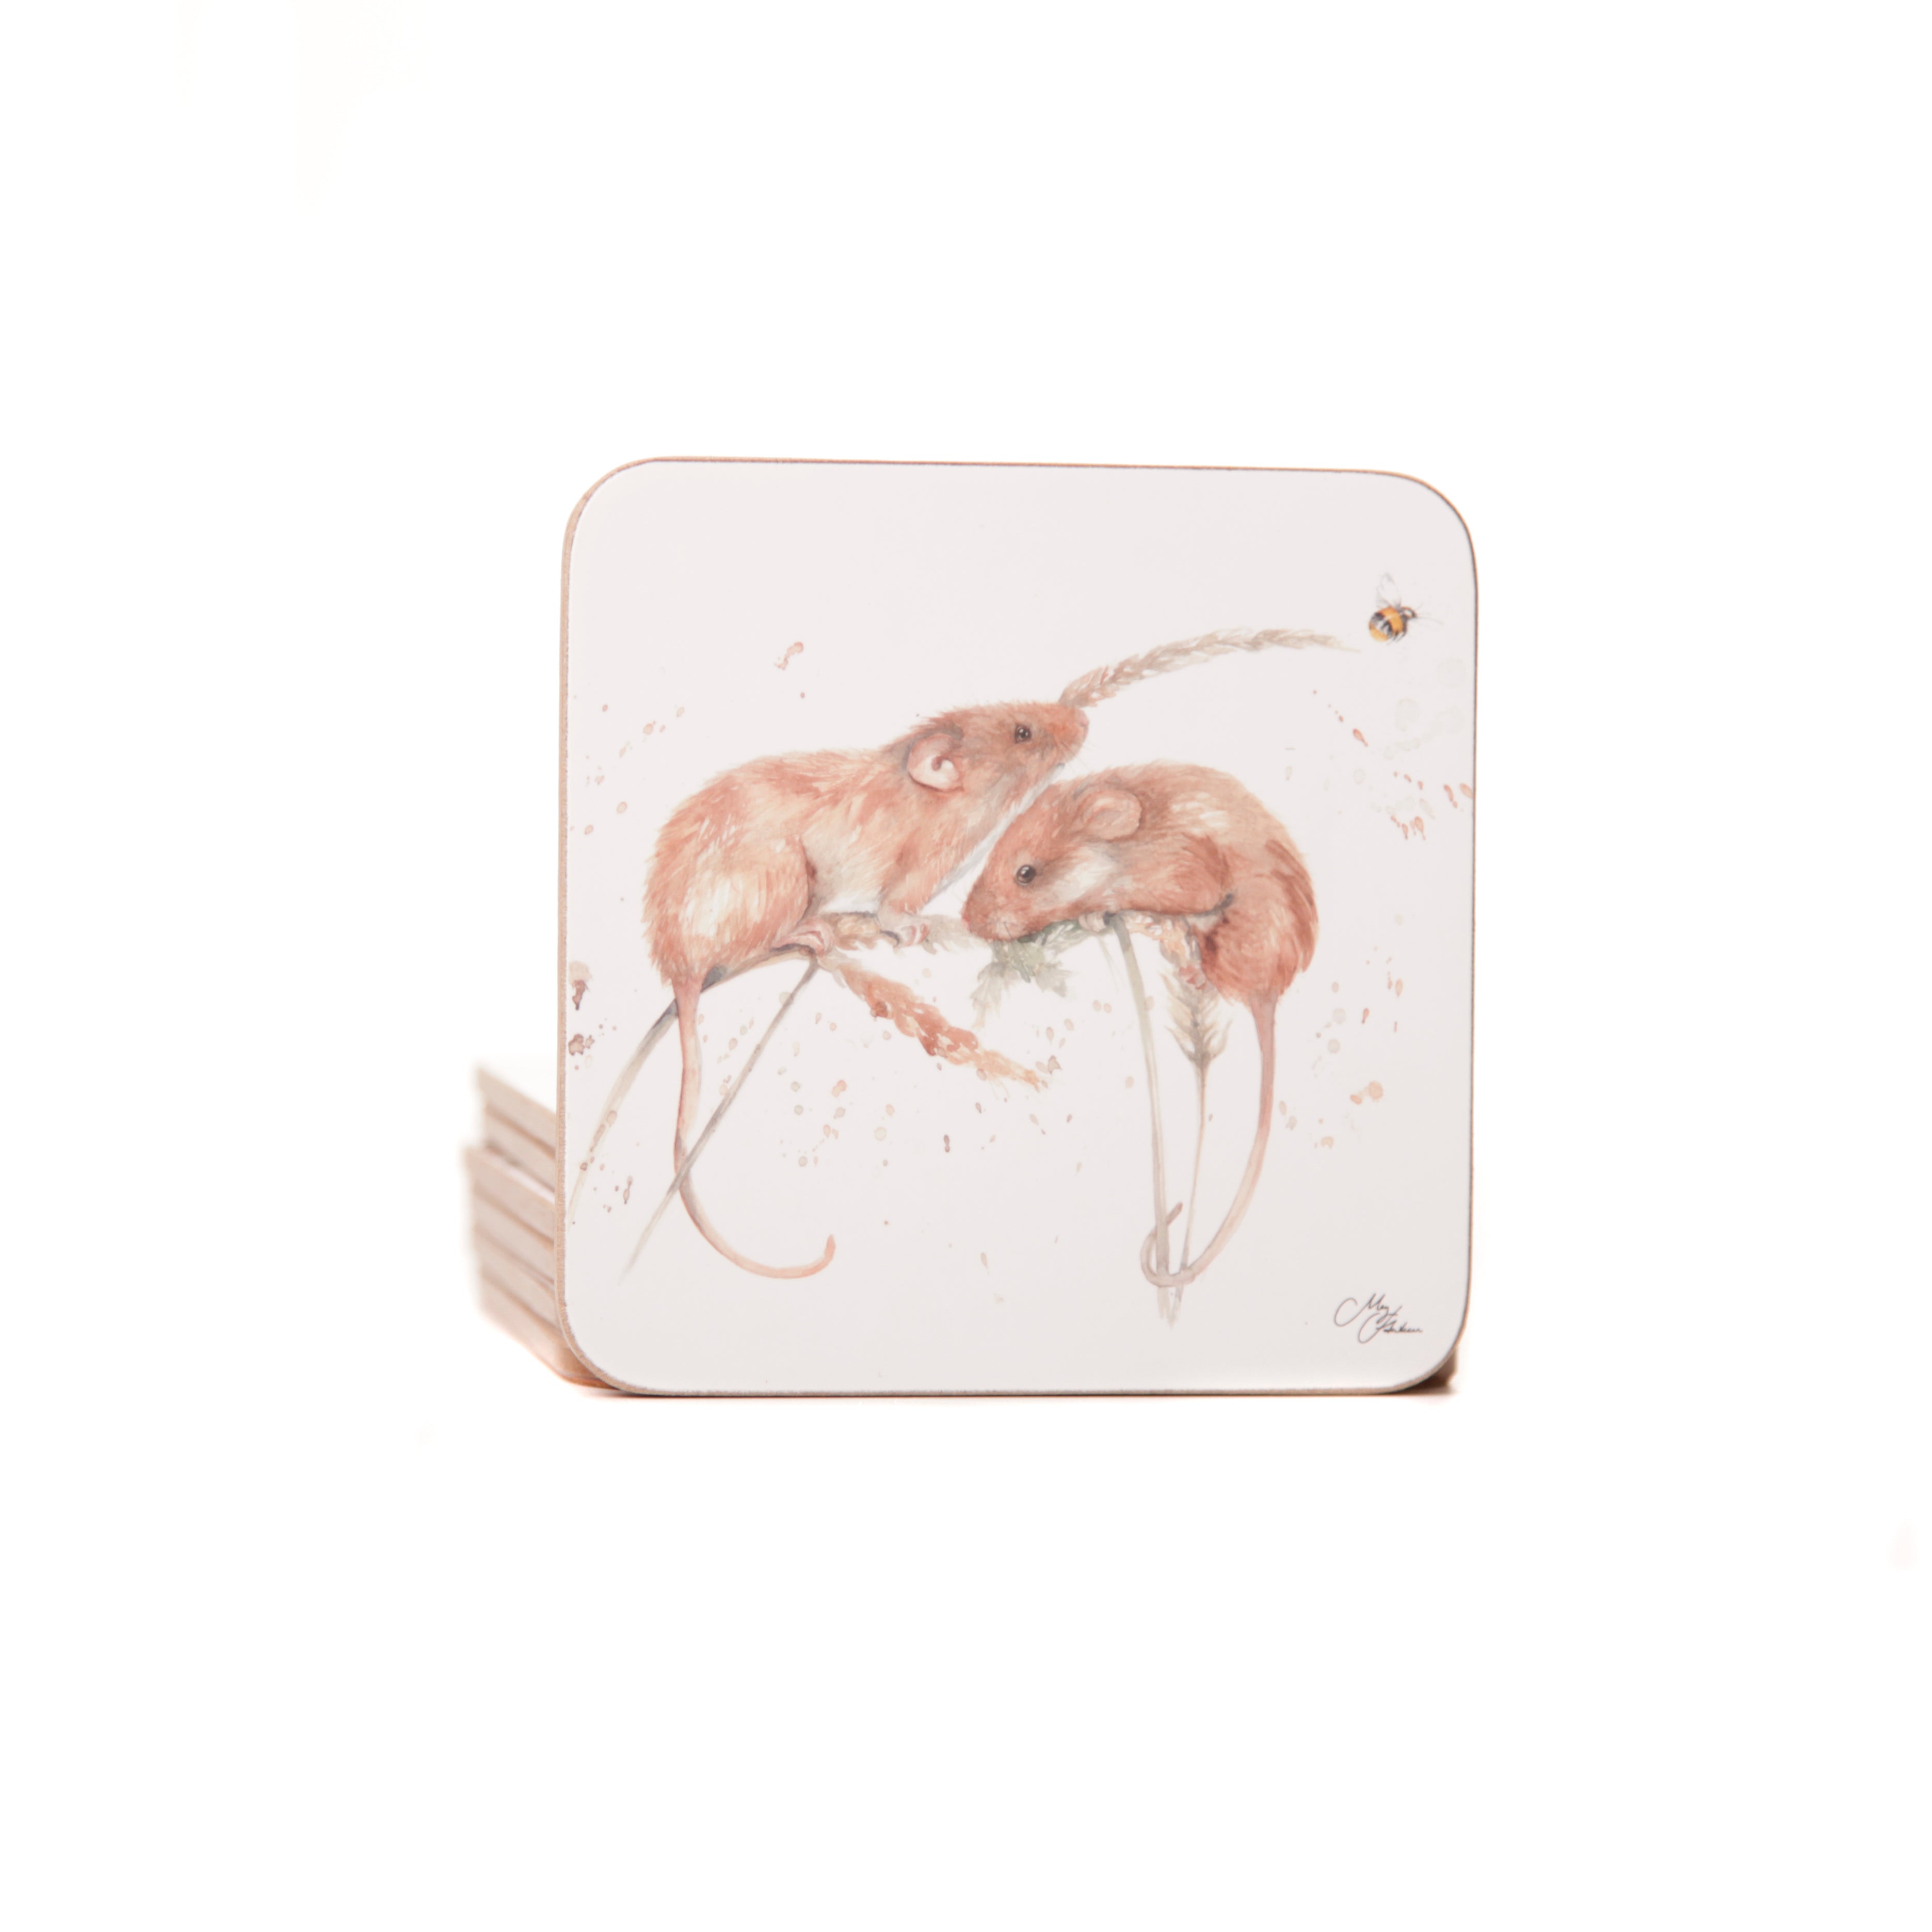 'The Field' Field Mice Watercolour Design Coasters